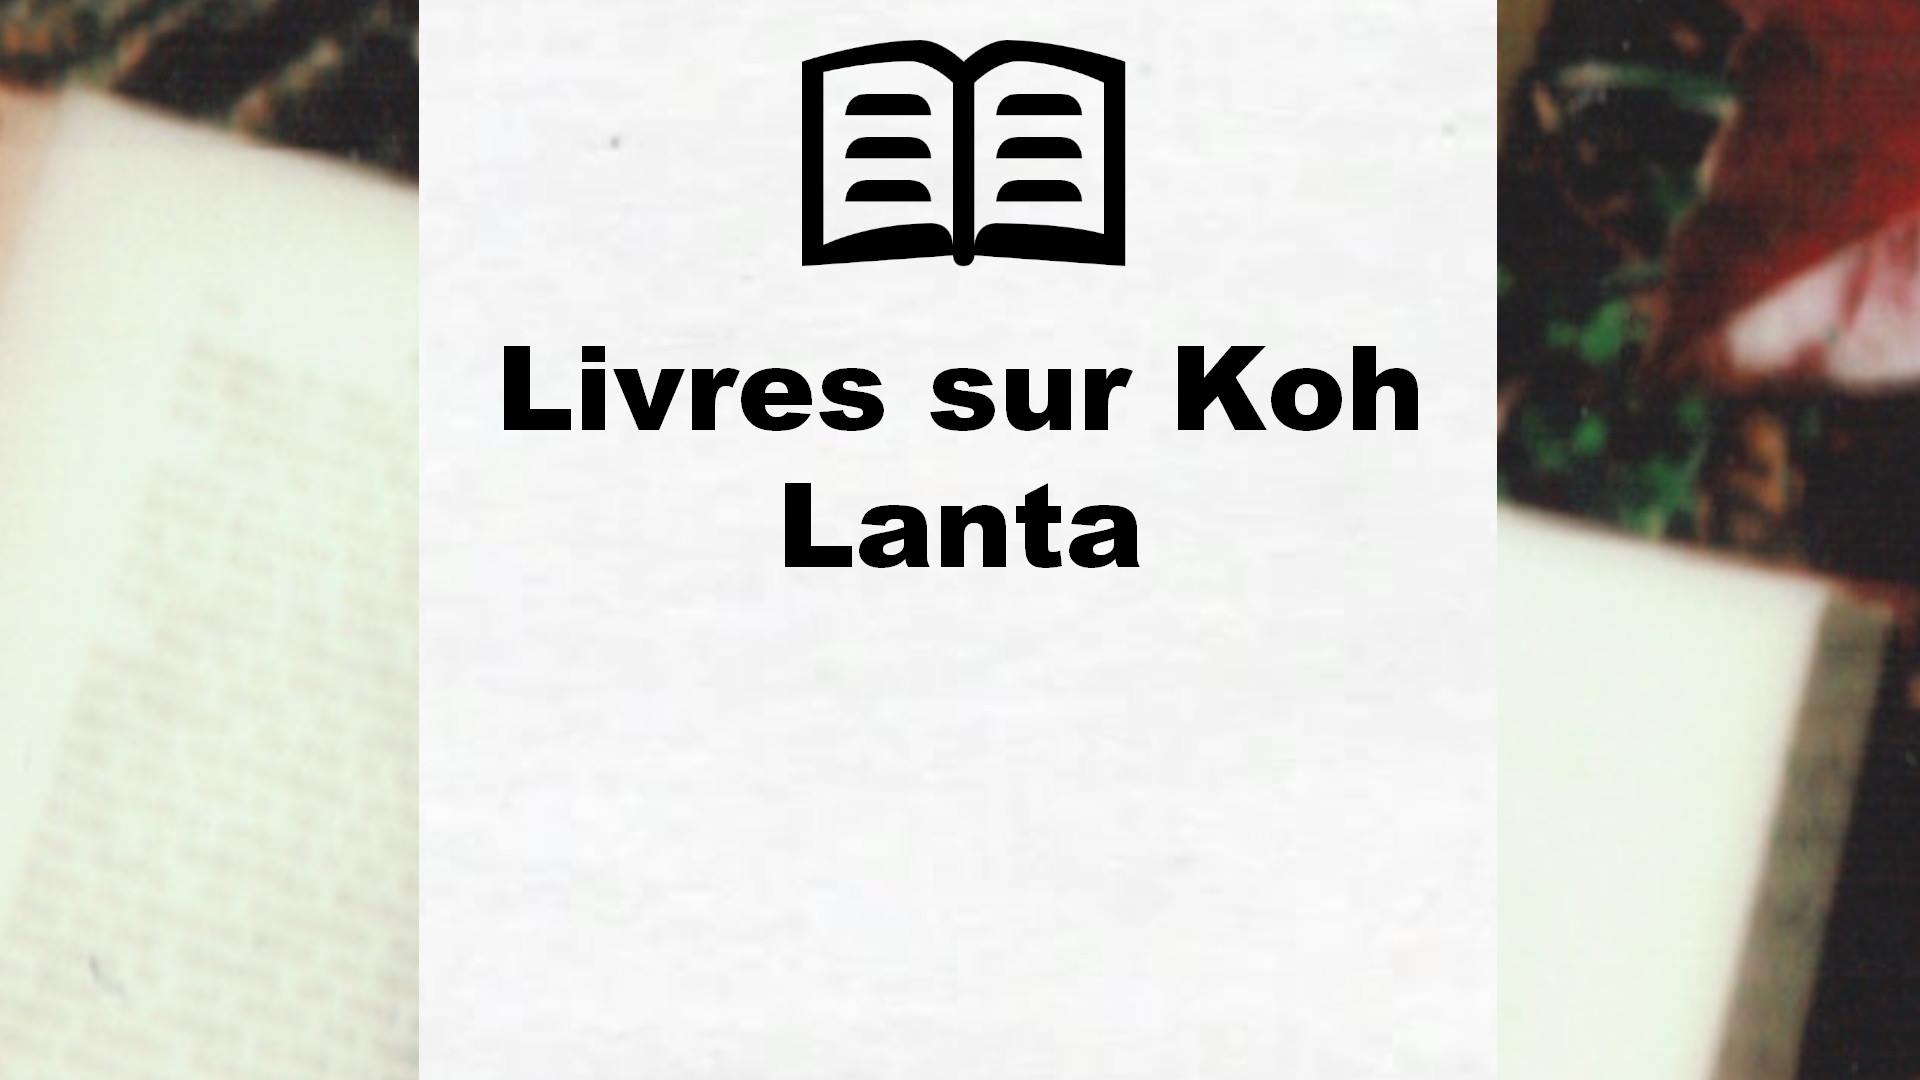 Livres sur Koh Lanta